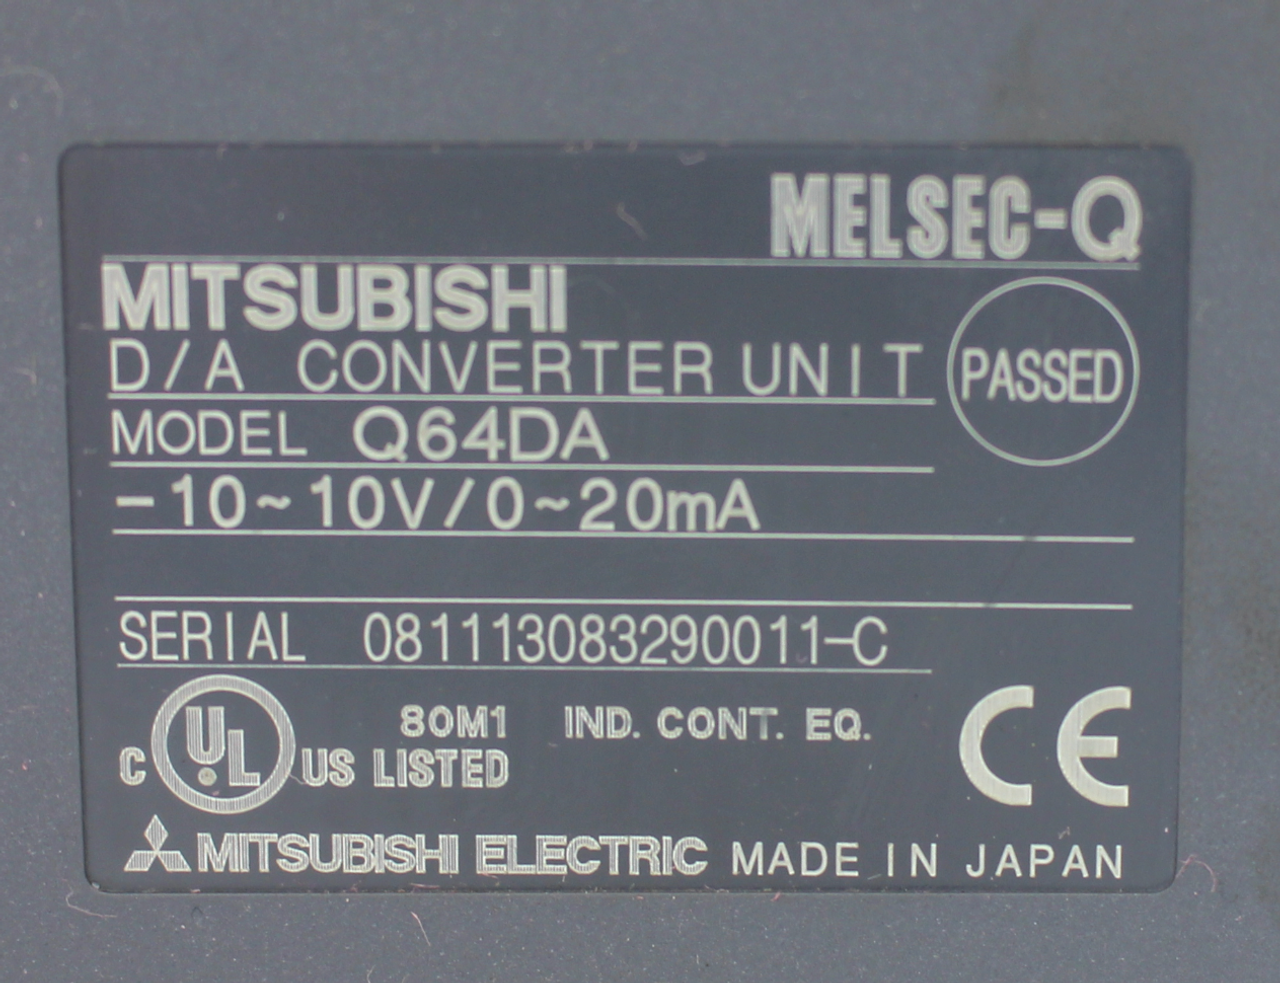 Mitsubishi Q64DA D/A Converter Unit 10V